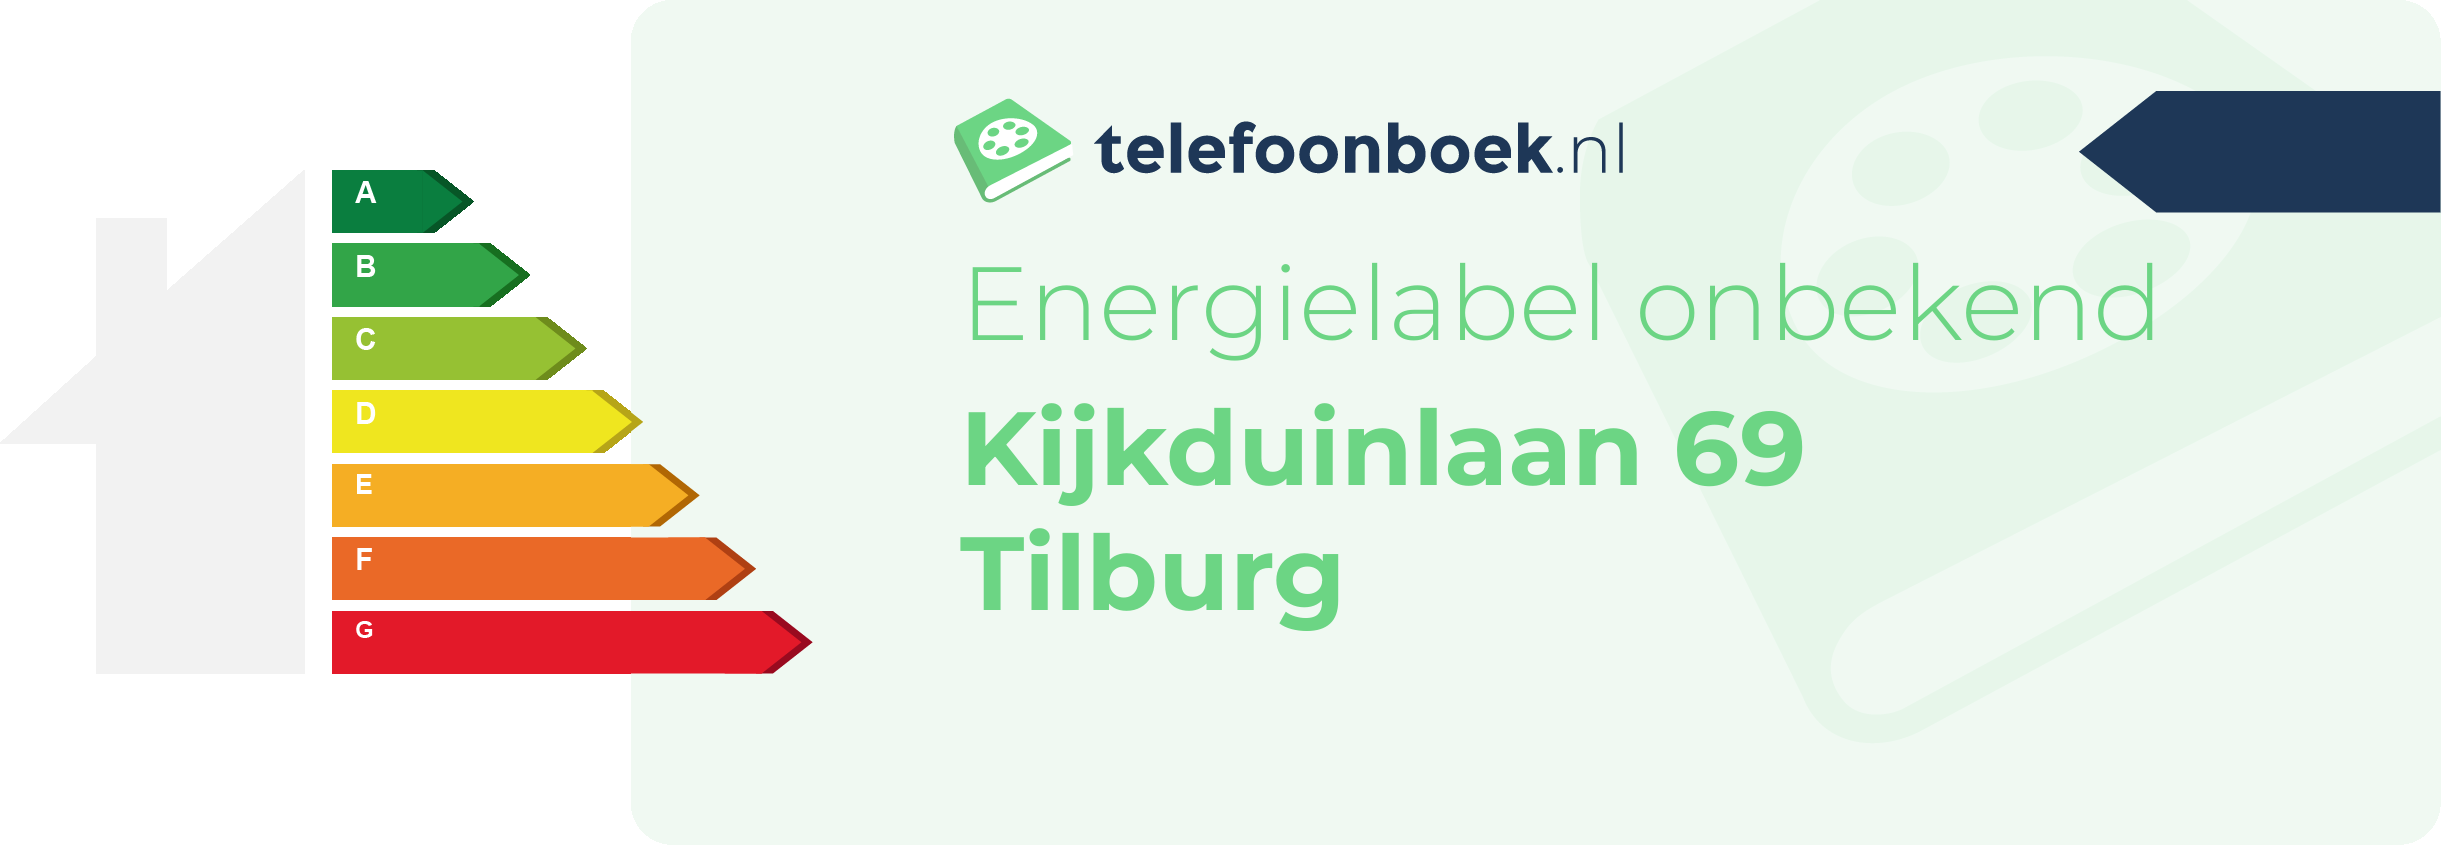 Energielabel Kijkduinlaan 69 Tilburg